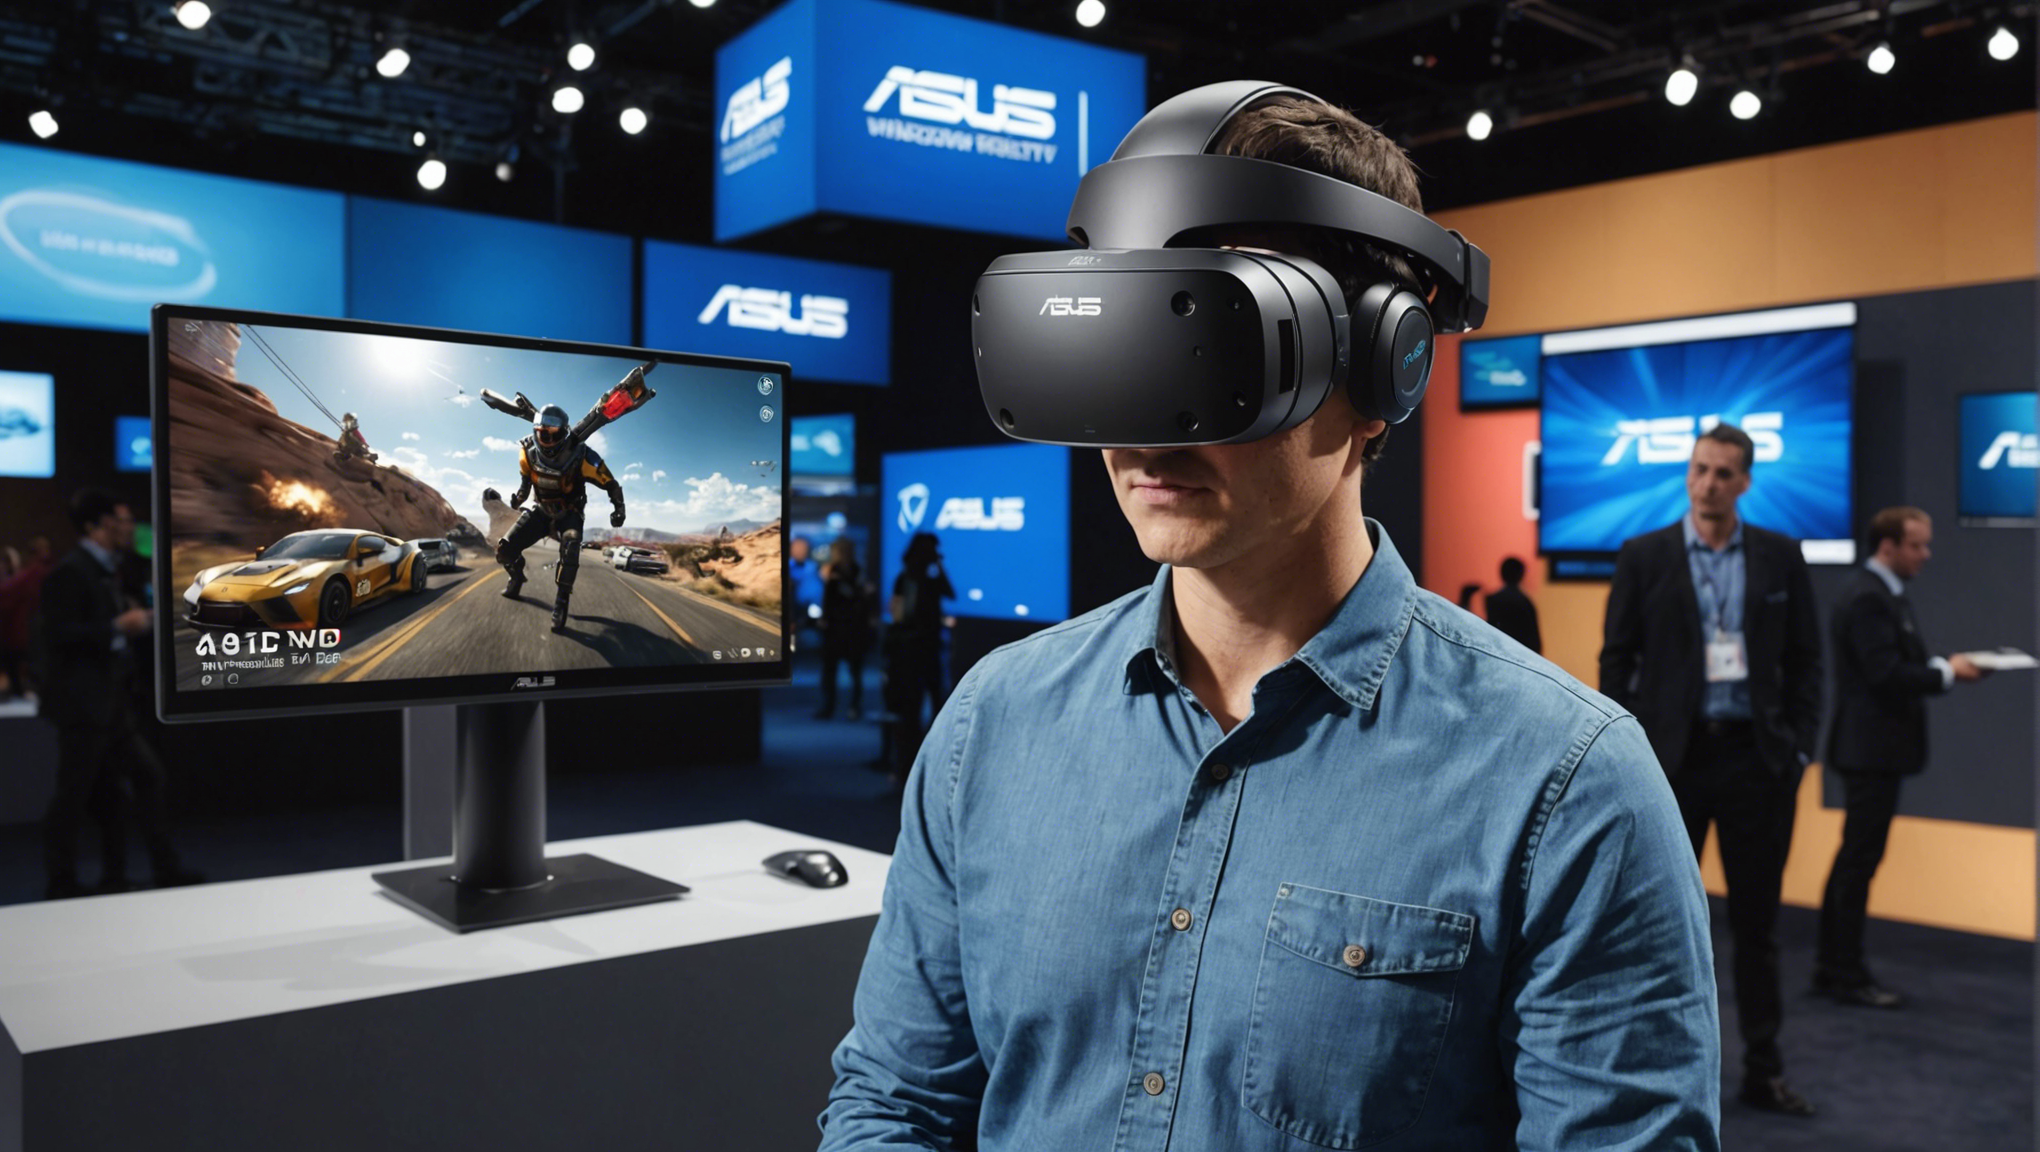 découvrez la nouvelle technologie asus windows mixed reality : une expérience immersive révolutionnaire alliant réalité virtuelle et réalité augmentée.